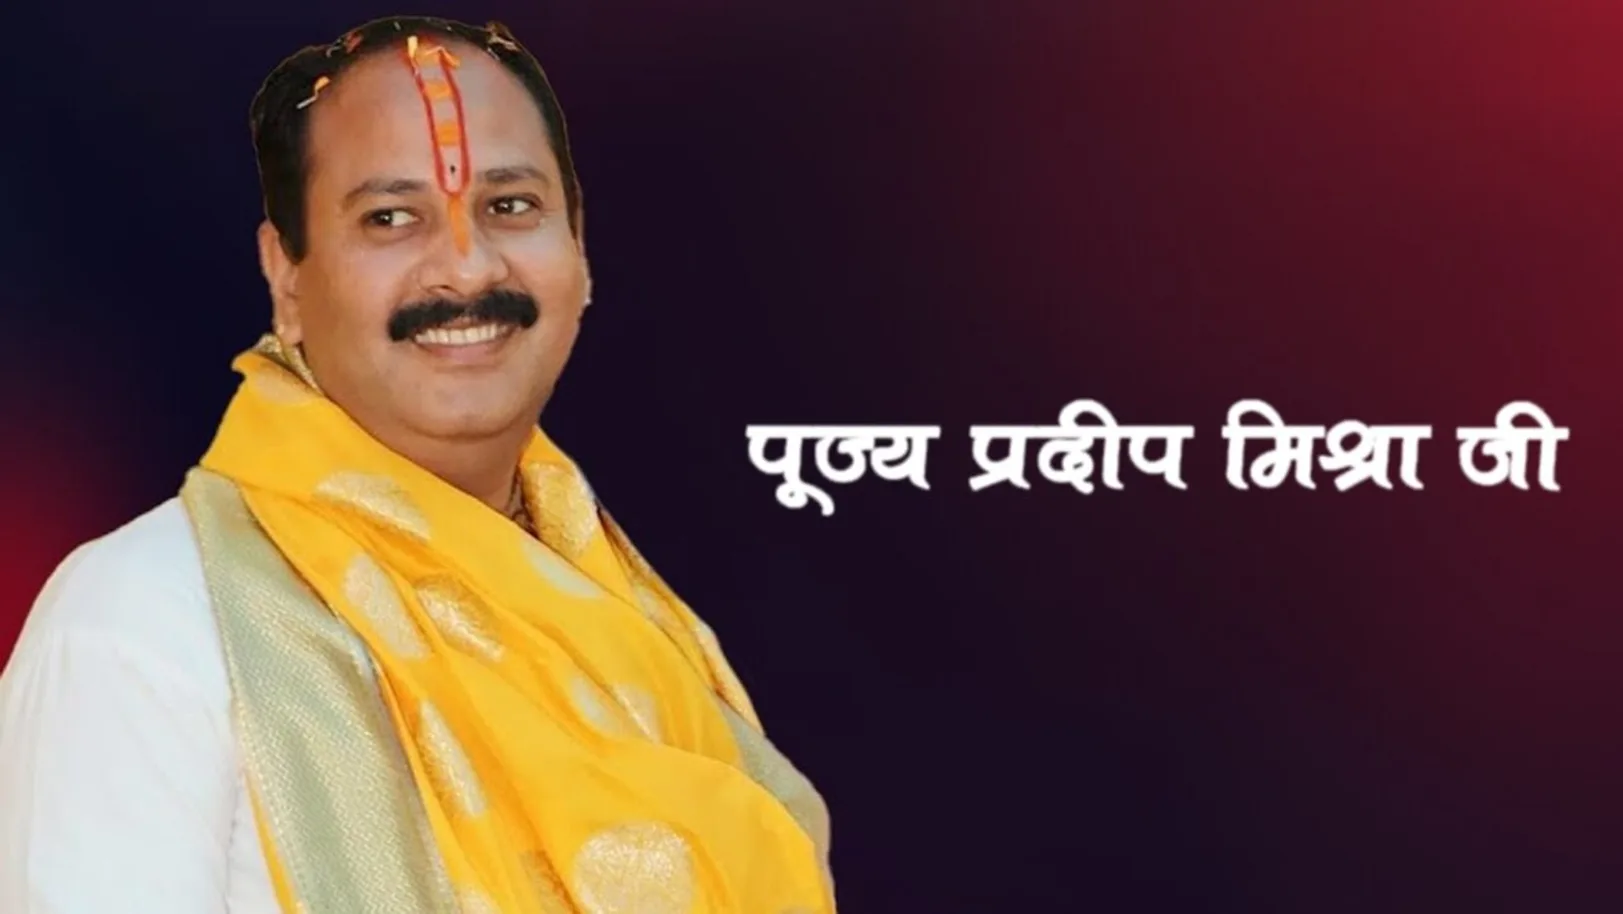 Pujya Pradeep Mishra Ji Live Streaming Now On Aastha